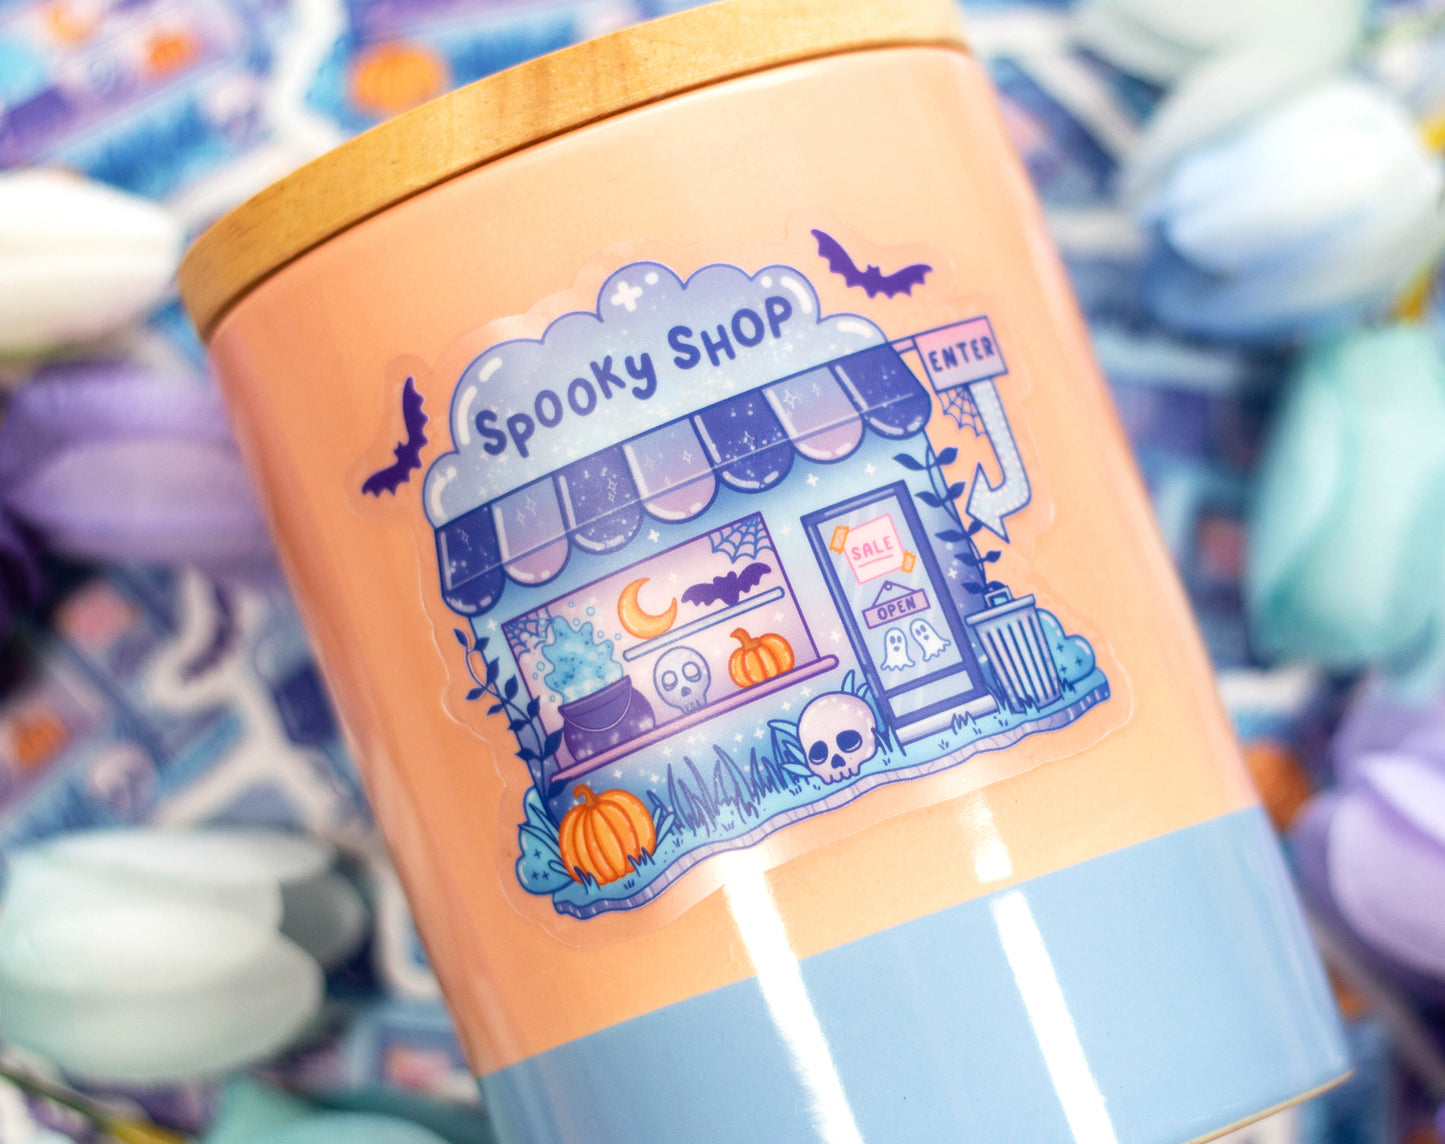 Spooky Shop Clear Sticker